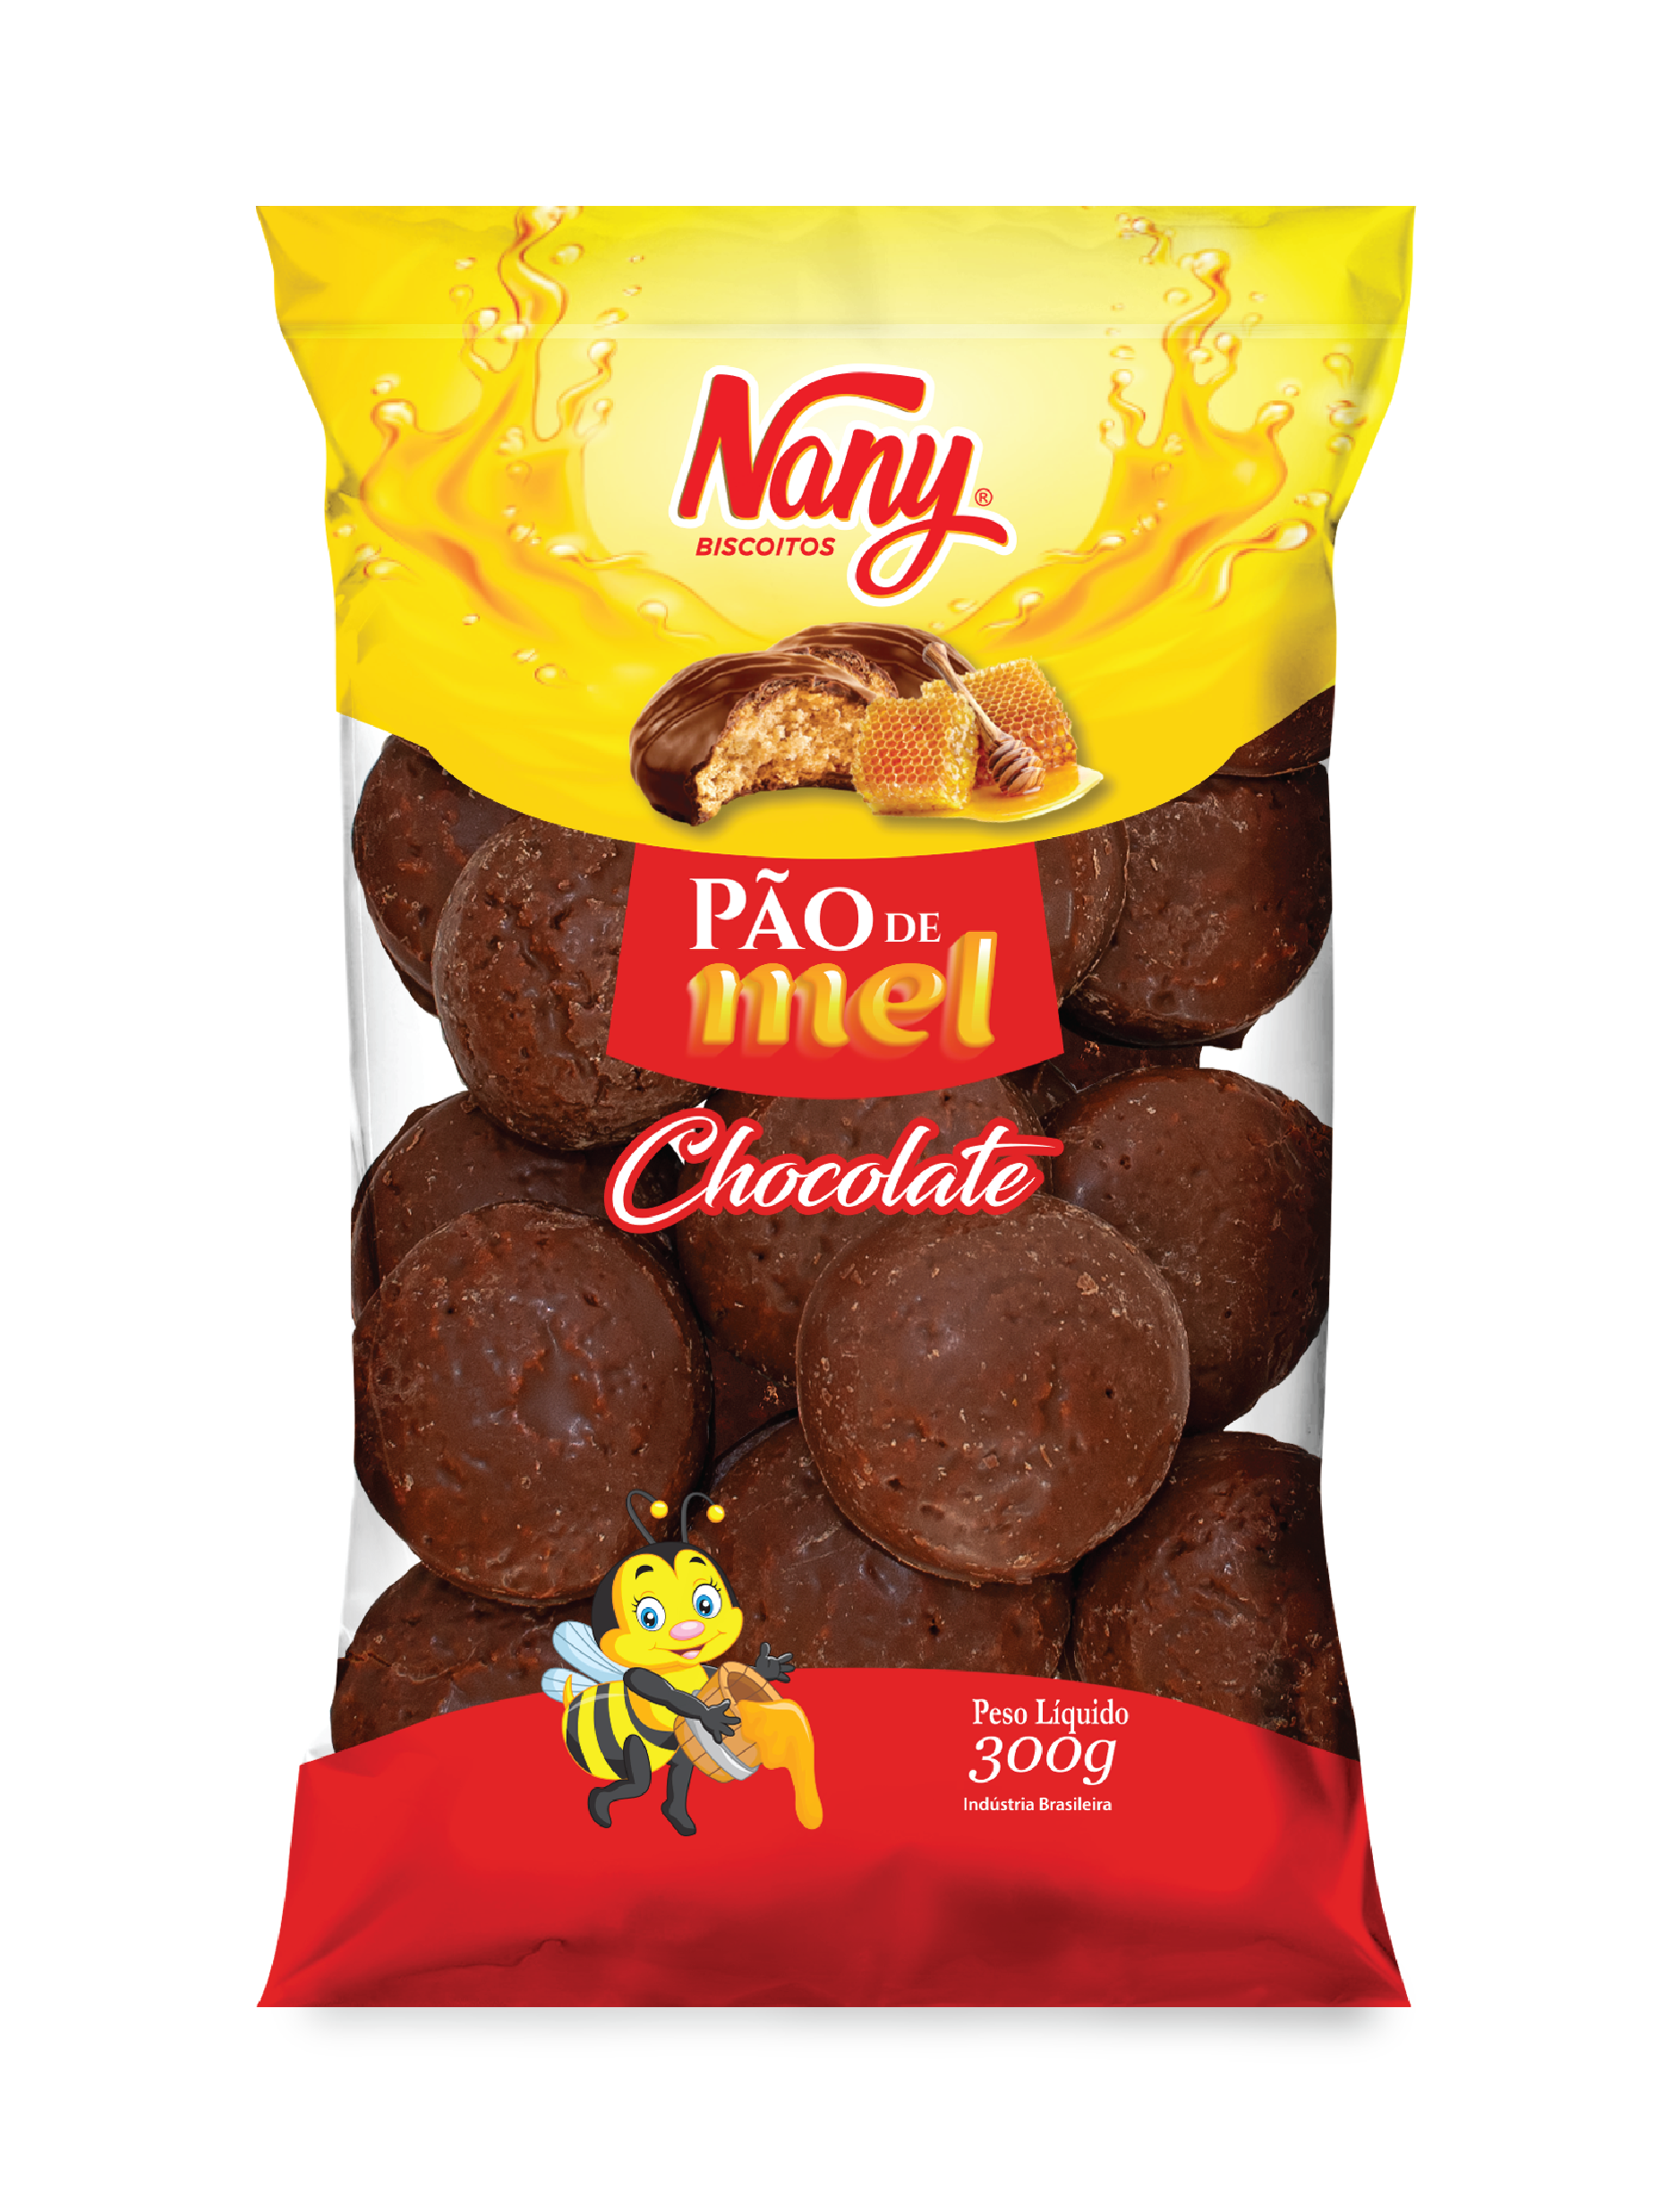 http://biscoitosnani.com.br/public/imagens/produtos/Nany_-_P%C3%A3o_de_Mel_Chocolate_Preto_300g_-_v6-02_(1).png